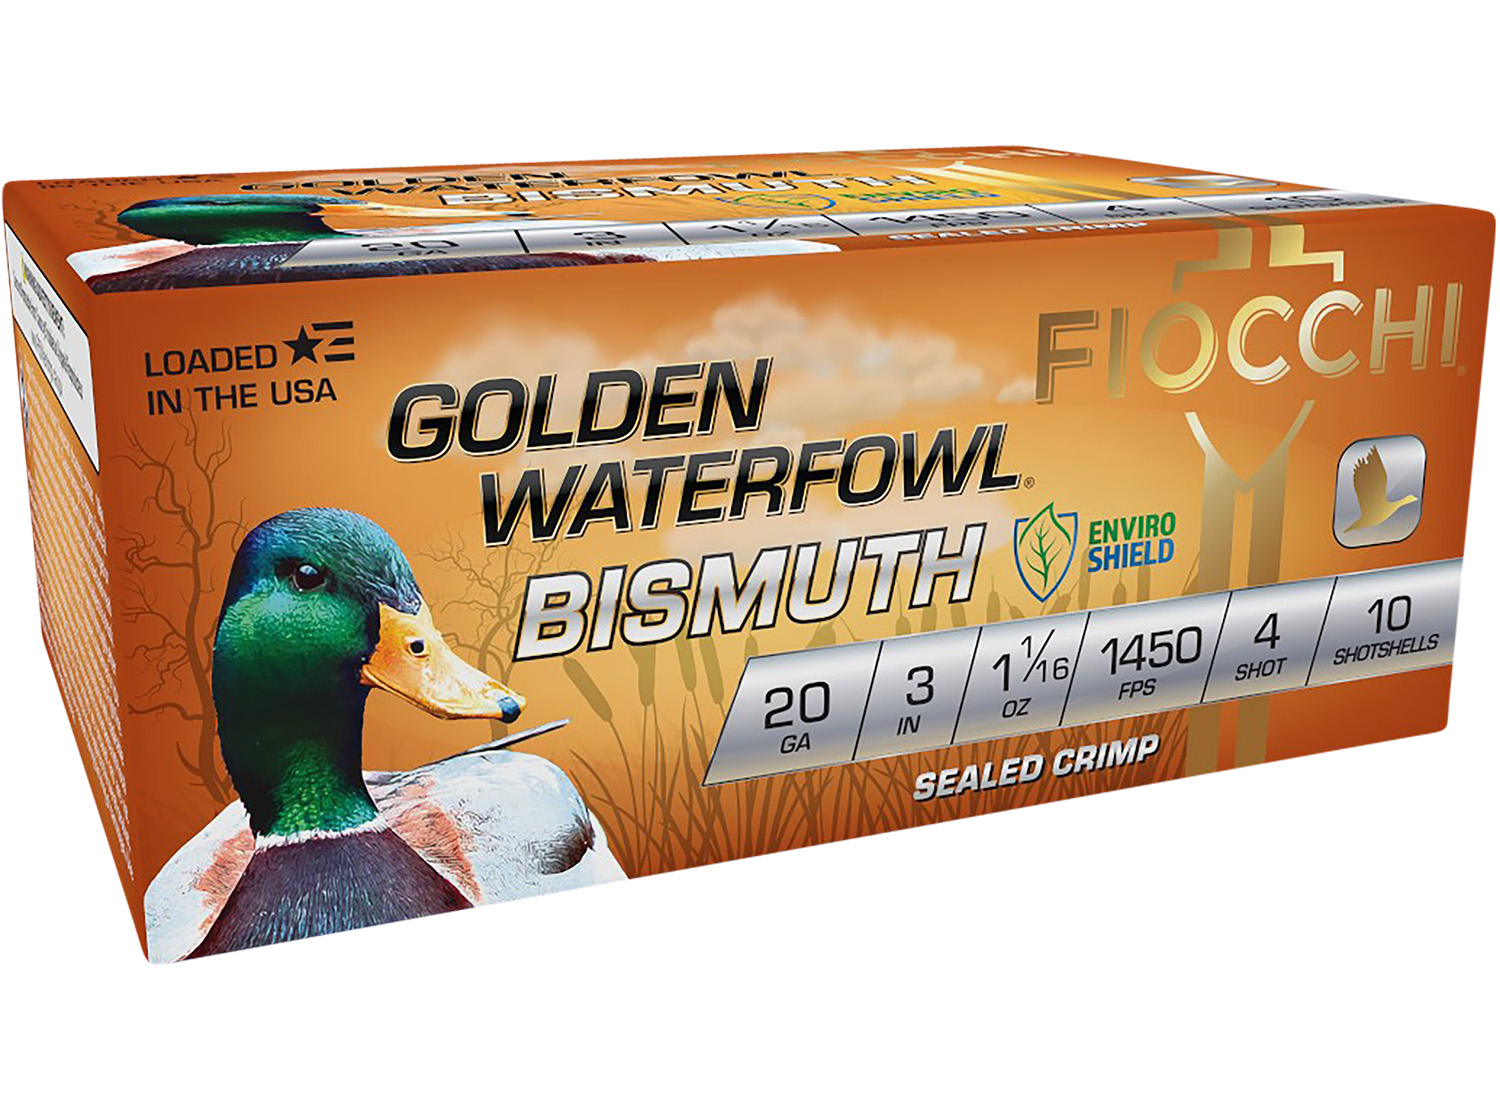 Fiocchi 203GB4 Golden Waterfowl Bismuth 20 Gauge 3